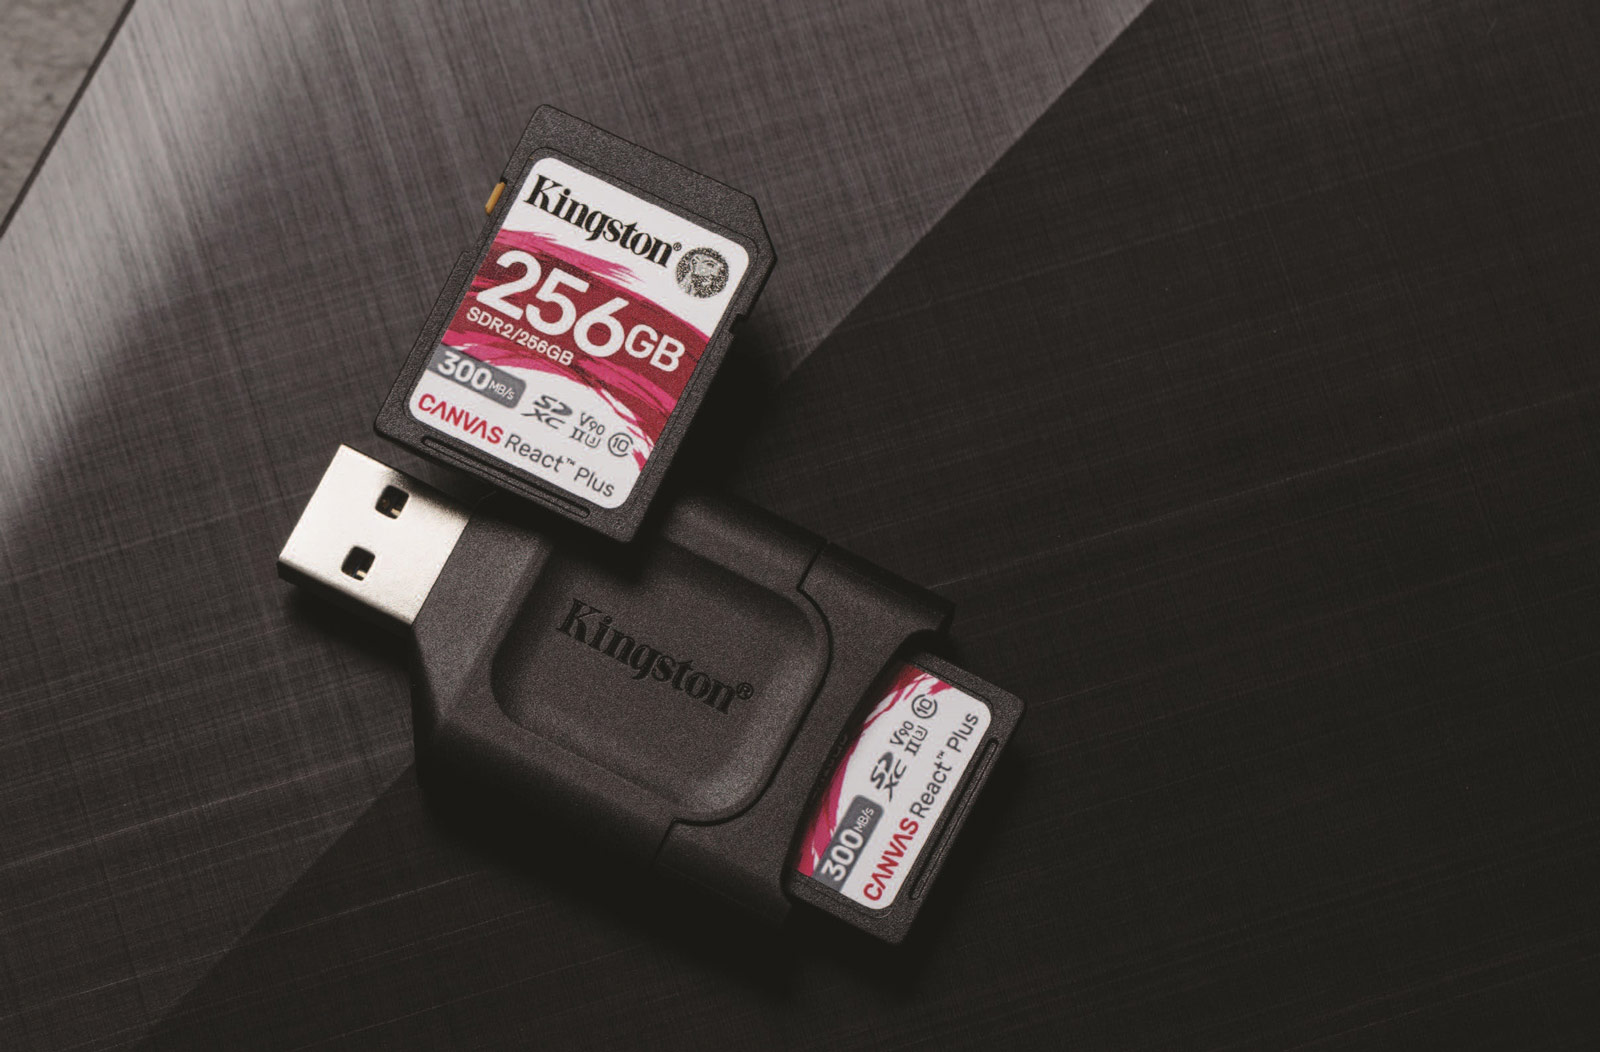 Внешний картридер Kingston USB 3.2 SDHC/SDXC UHS-II MOBILELITE Plus (MLP). Kingston MOBILELITE Plus SD. Card Reader Kingston MOBILELITE Plus SD. Карт-ридер Kingston MOBILELITE Plus SD, USB 3.2 Gen.1, UHS-I/-II. Kingston usb 3.2 gen 1